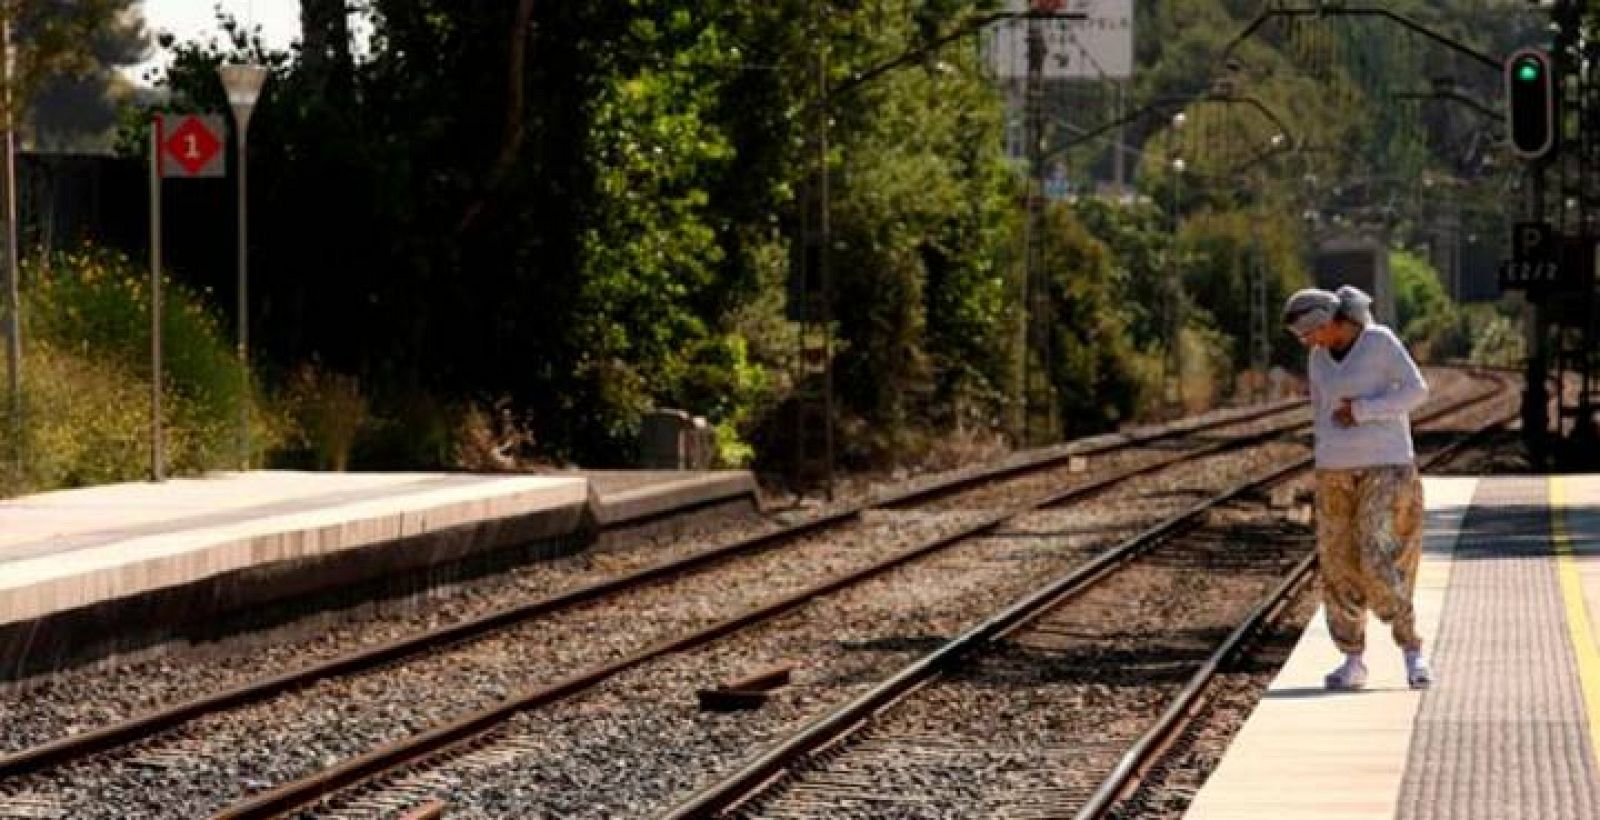 Una mujer observa las vías de tren de la estación de Castelldefels Platja donde tuvo lugar el fatal accidente de tren que causó 13 víctimas mortales la noche en que se celebraba la festividad de San Juan.